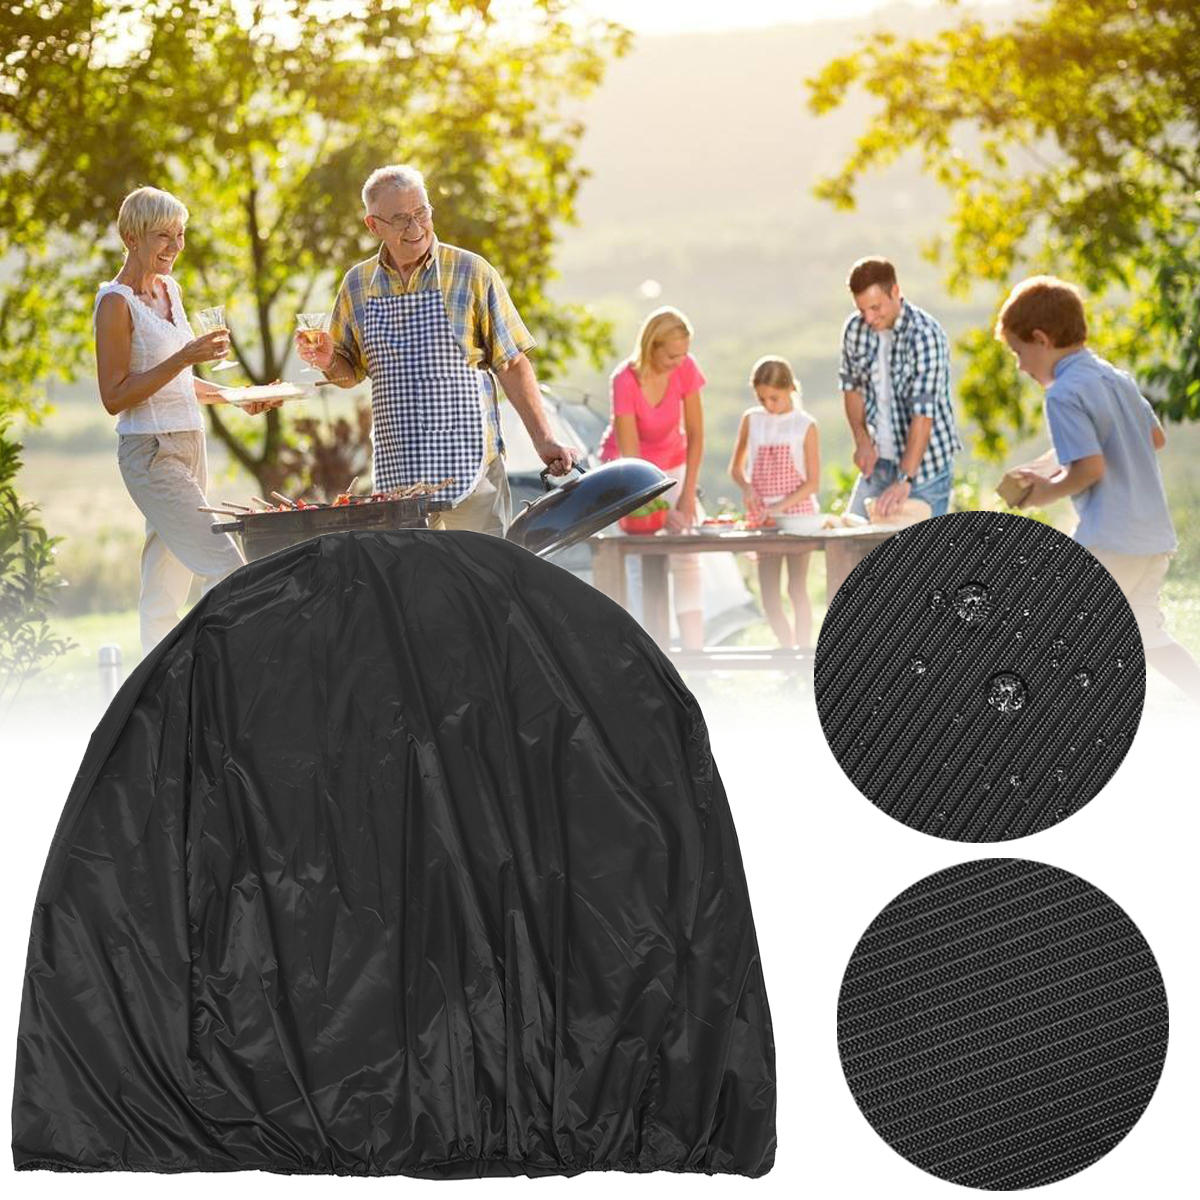 Capa para churrasqueira de 134x64,7x149,3 cm para uso externo em camping e piquenique. Protege contra chuva, poeira, raios UV e umidade.